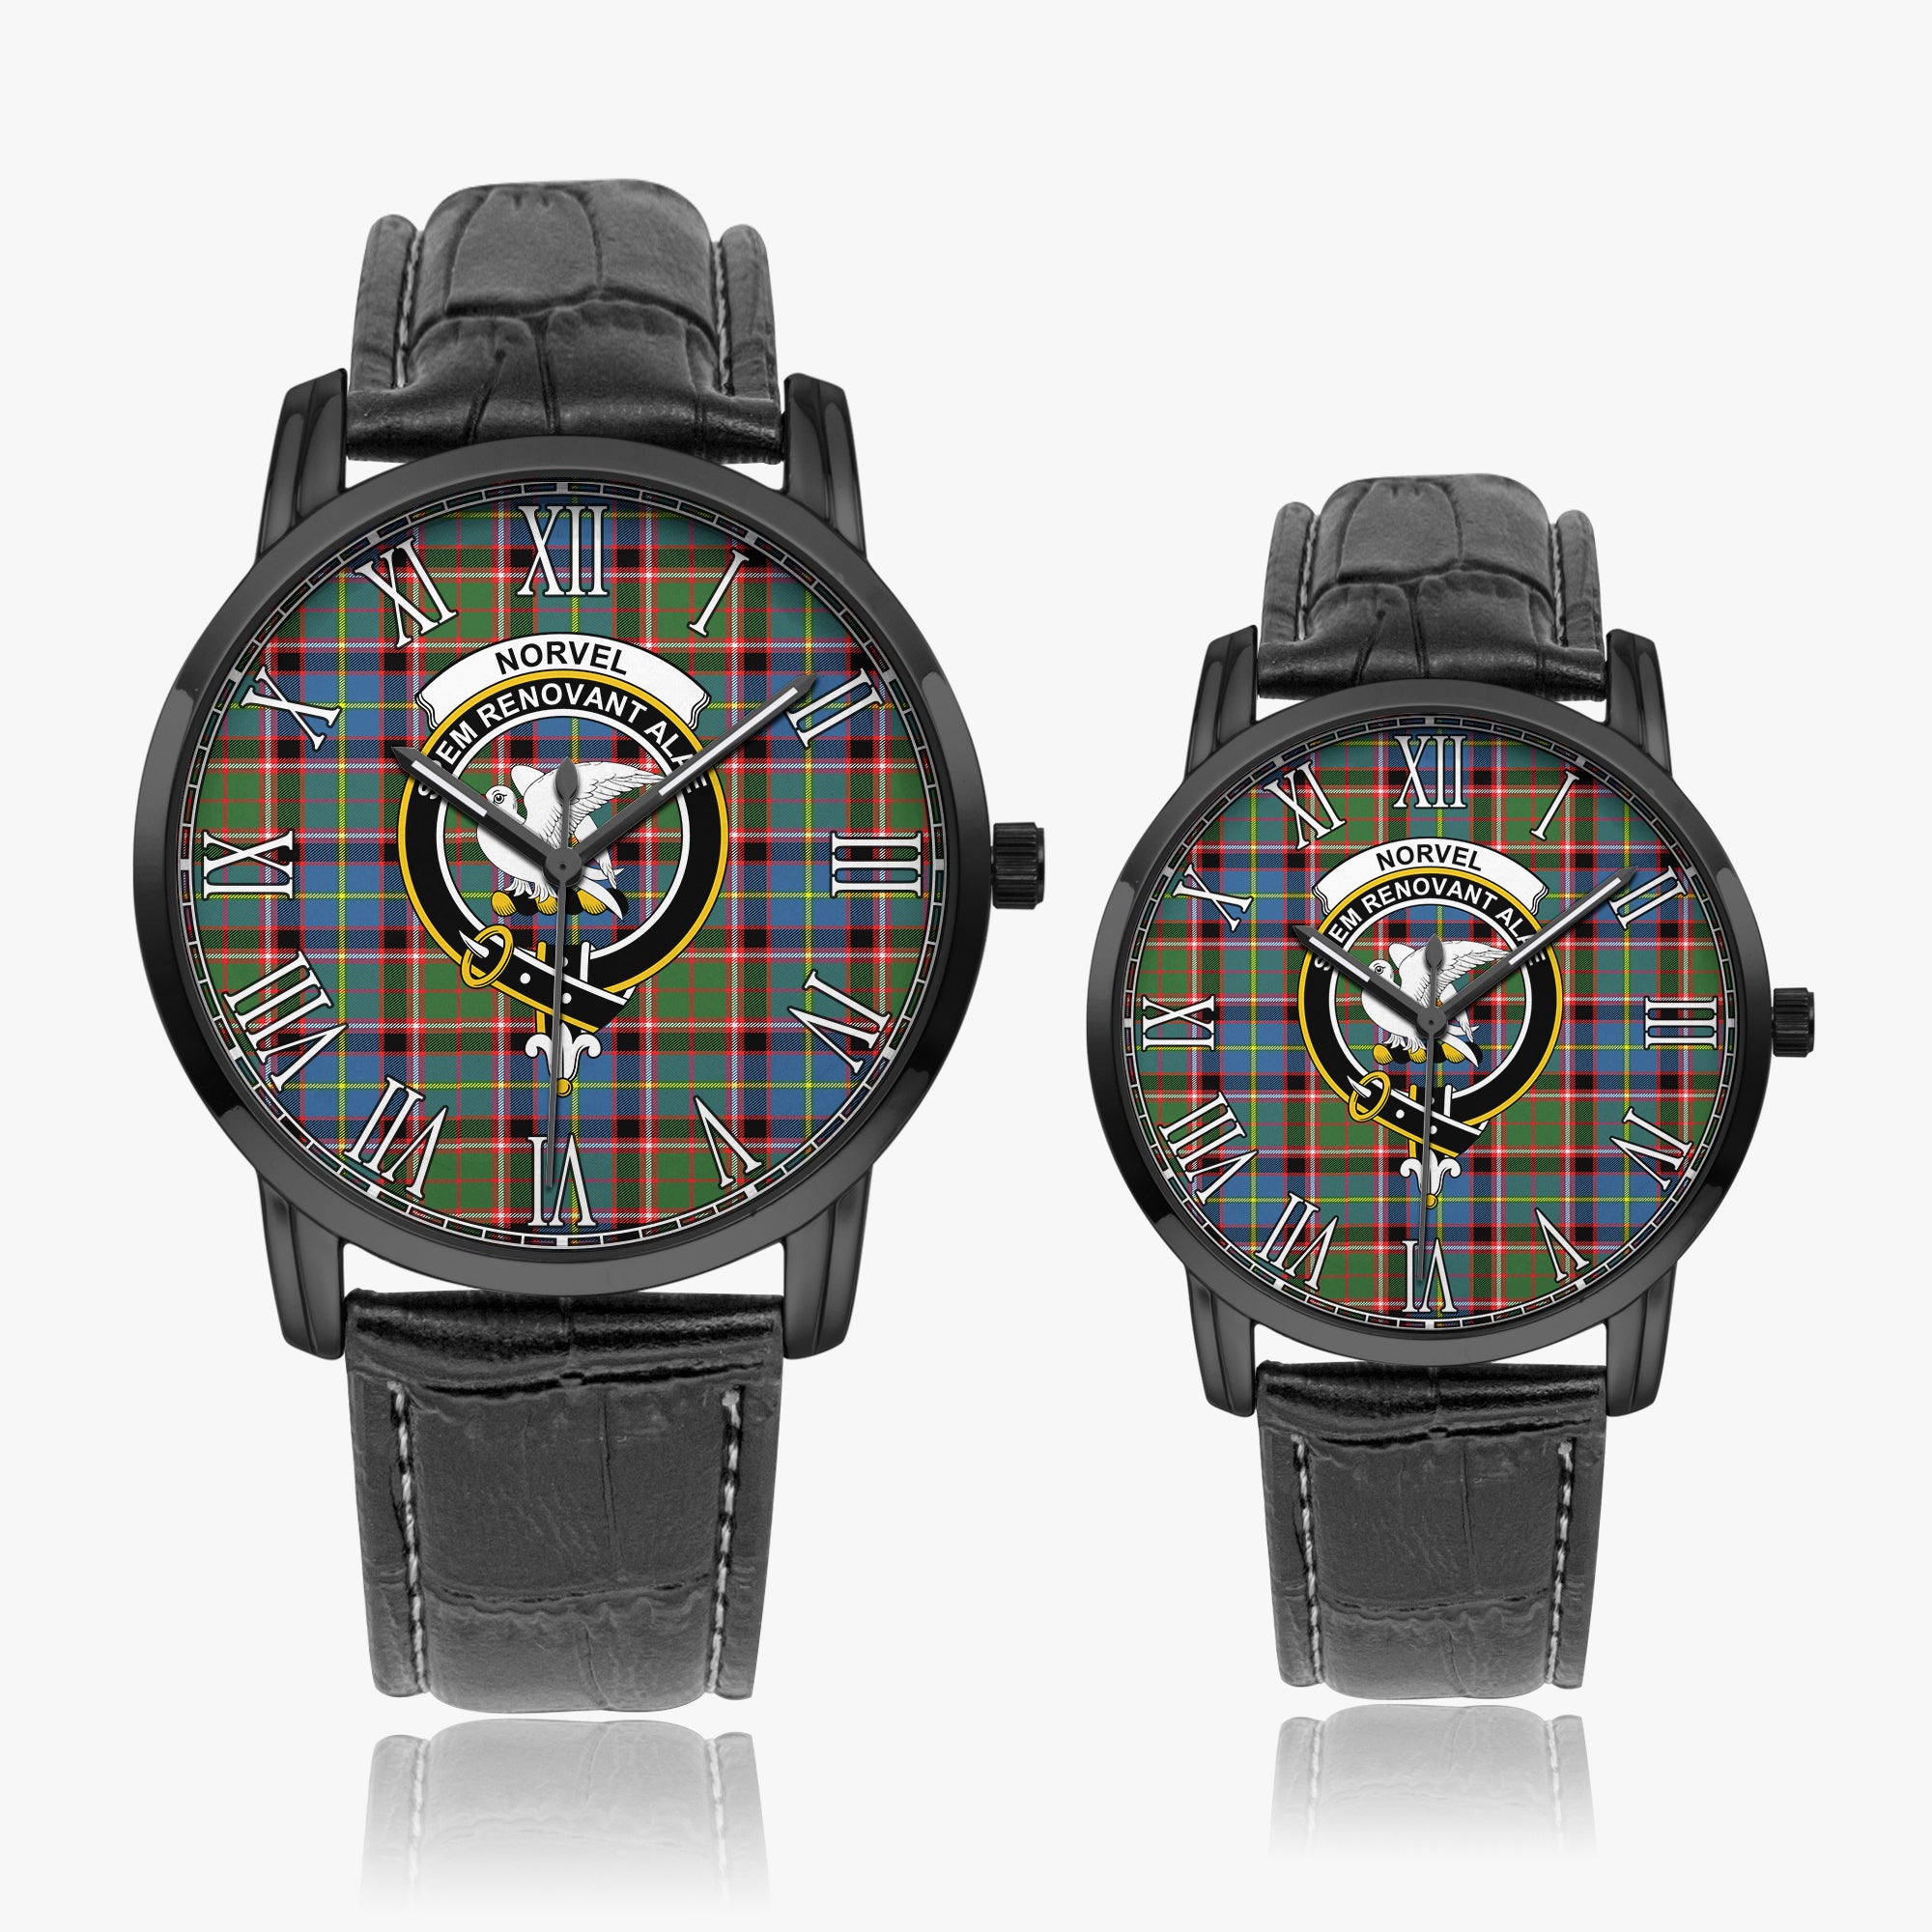 norvel-family-crest-quartz-watch-with-leather-strap-tartan-instafamous-quartz-leather-strap-watch